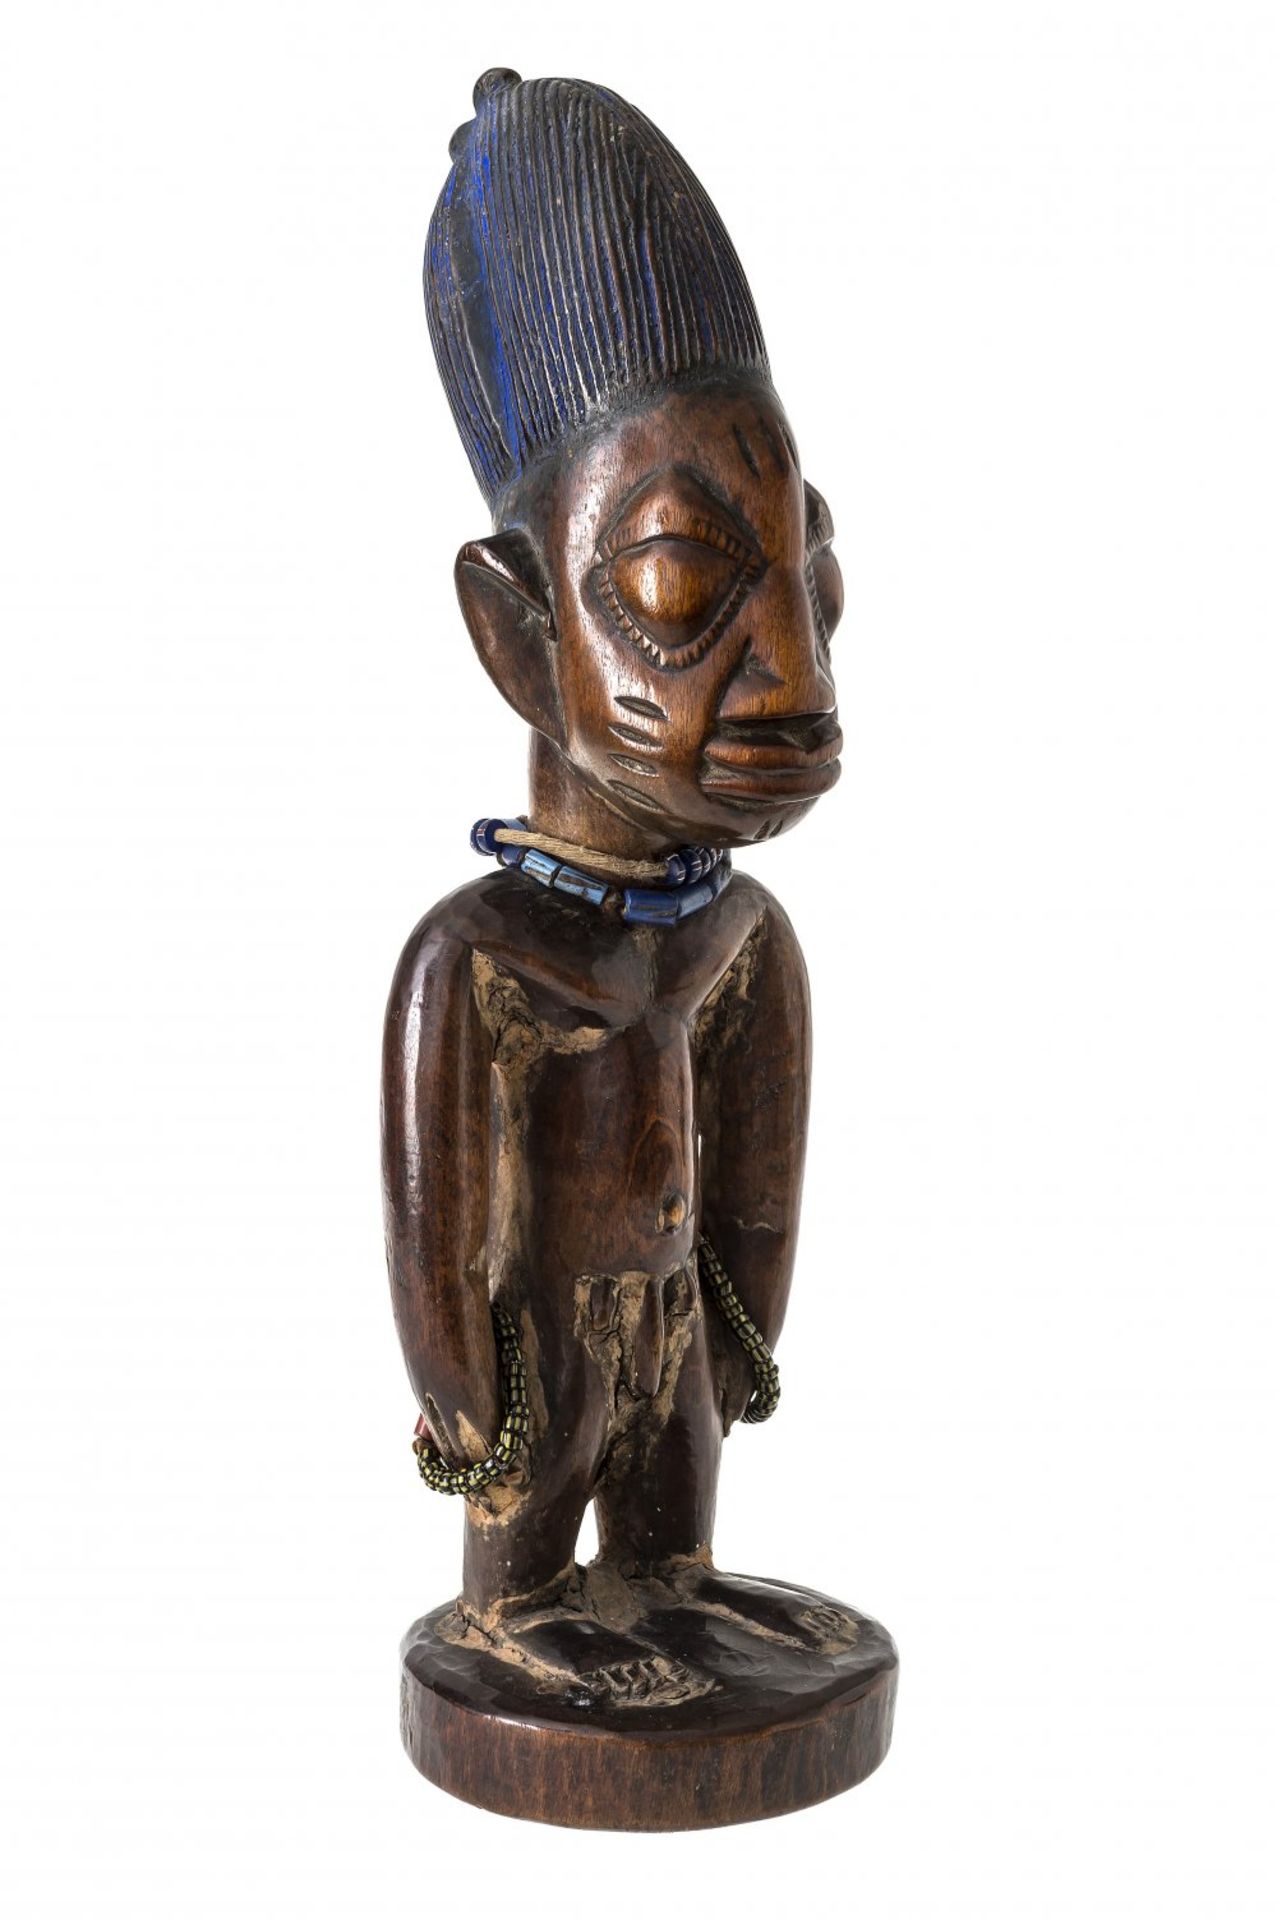 Männliche Zwillingsfigur "ibedji"Yoruba, Nigeria.Mit blau gefärbter Turmfrisur. H. 26,5 cm. Der